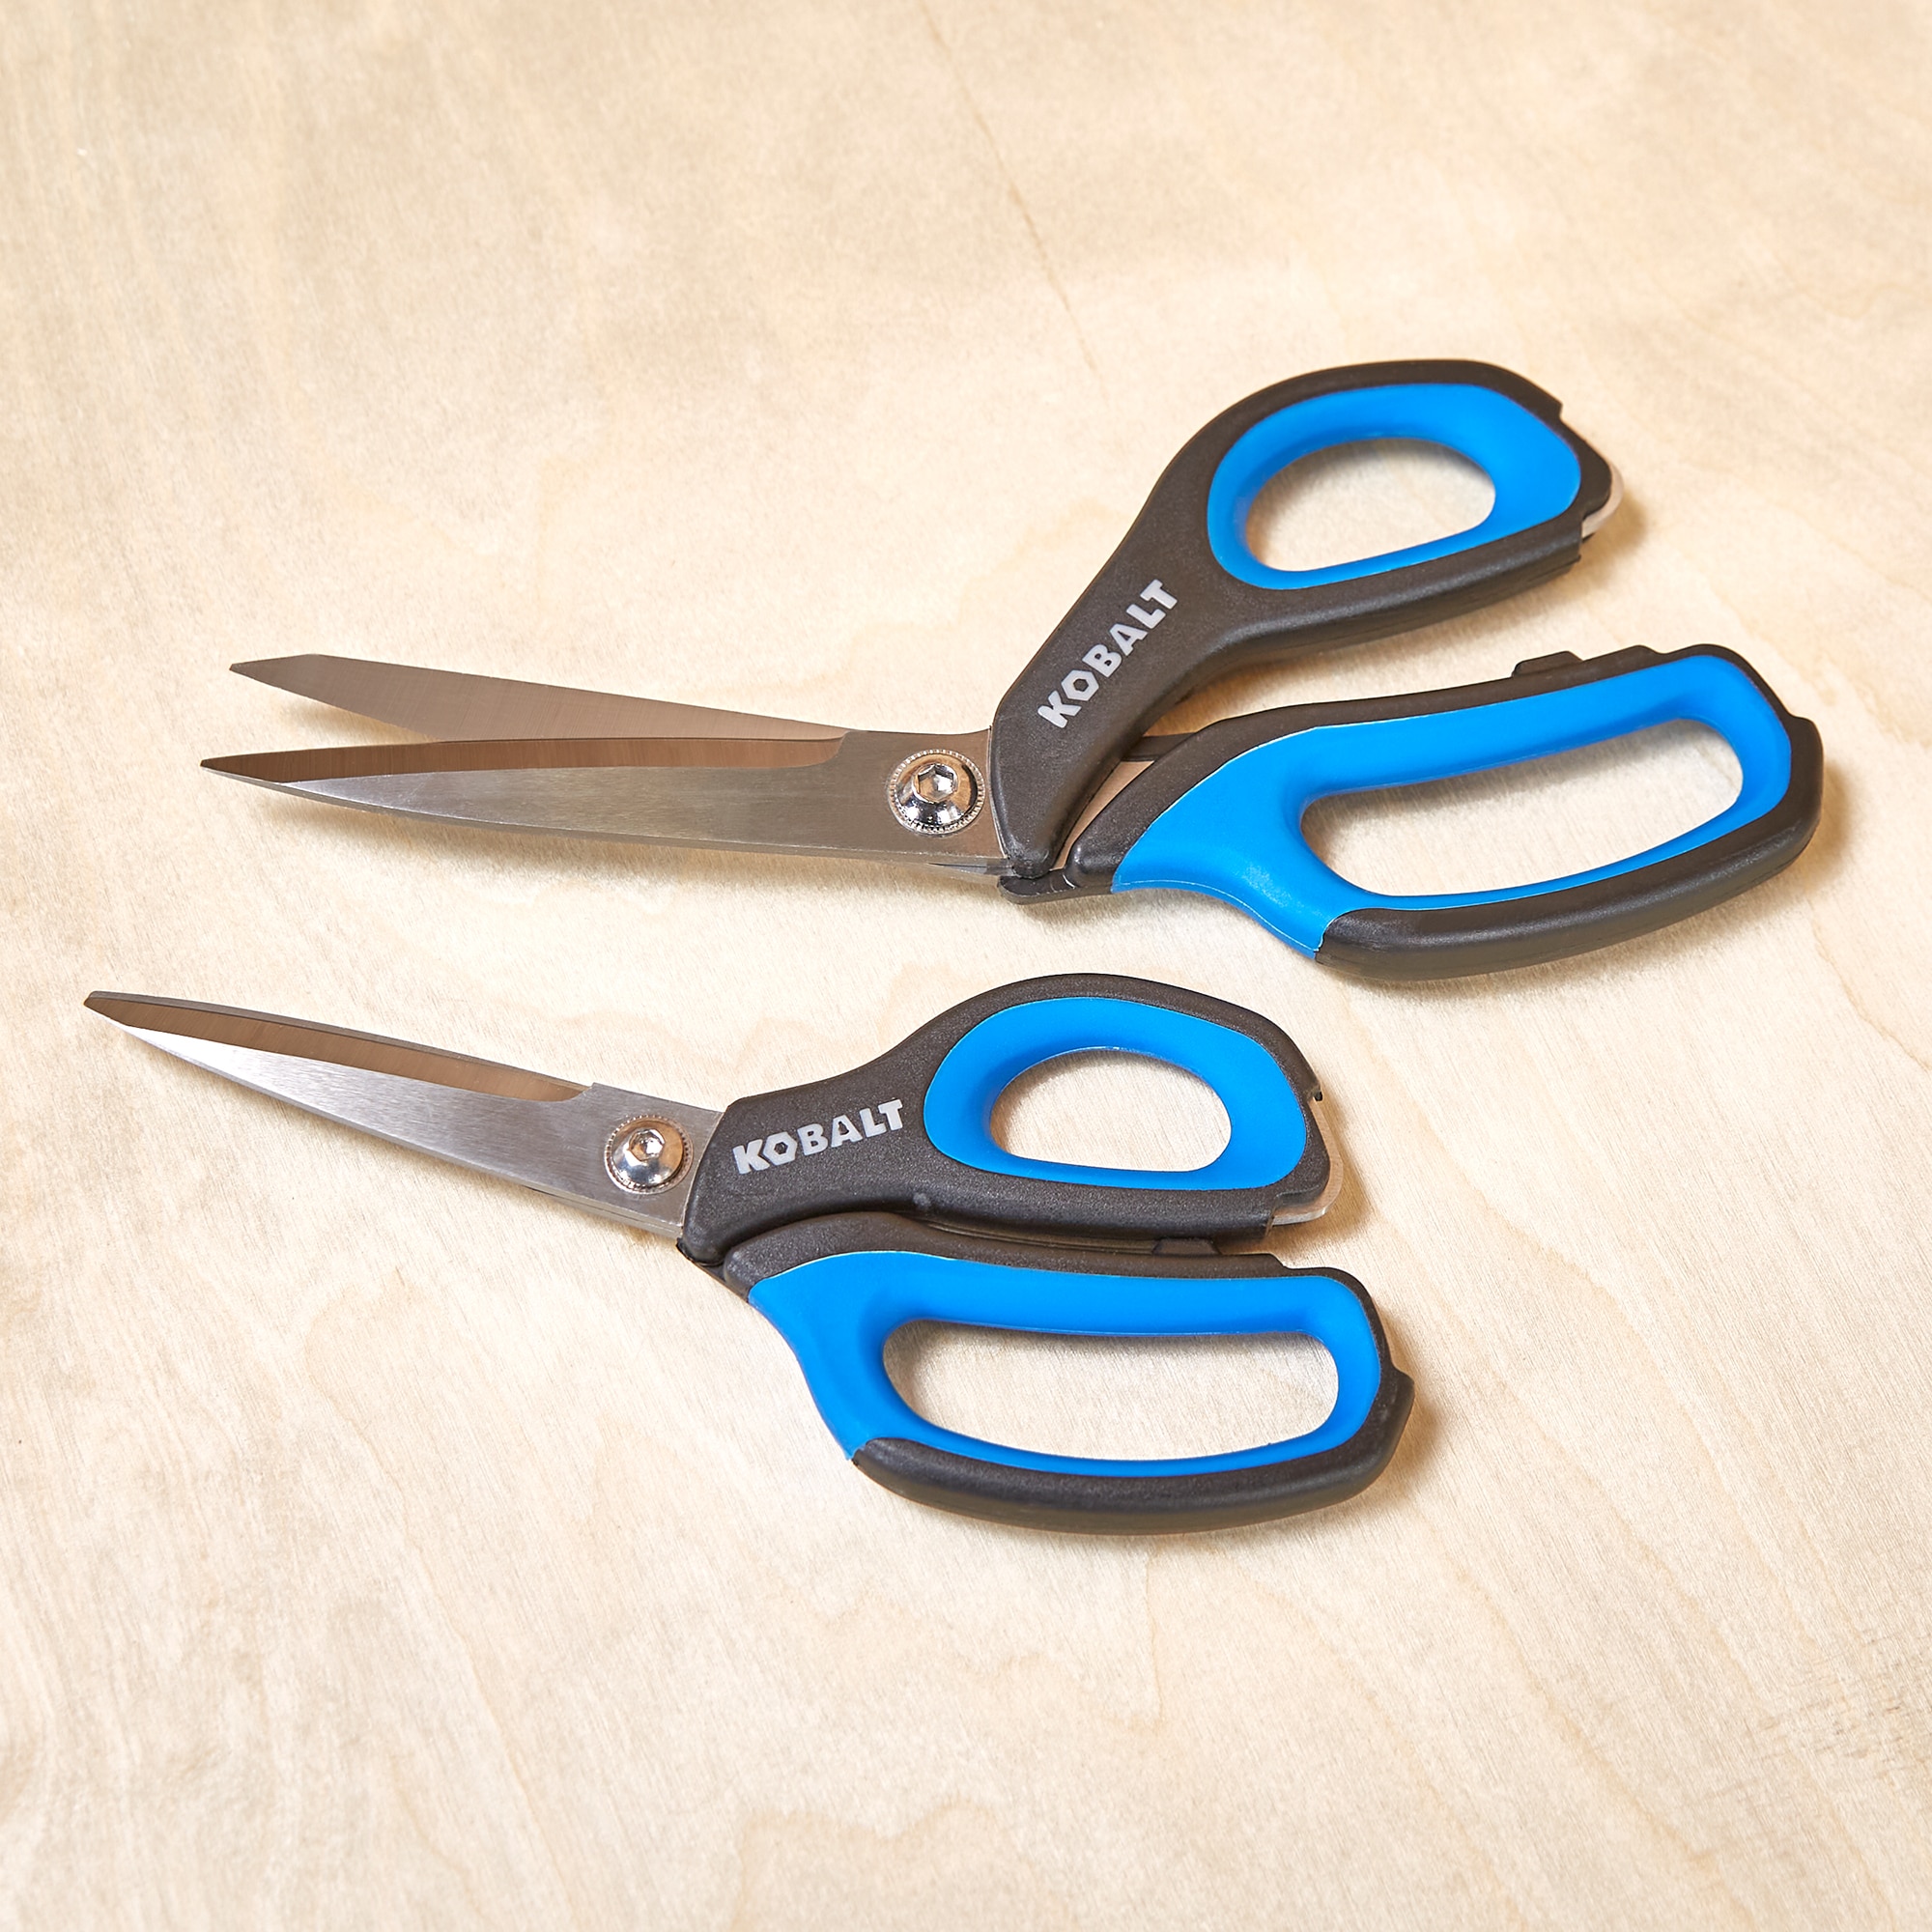 School Smart Blunt Tip Scissors, 6-1/4 Inches, Pack of 12